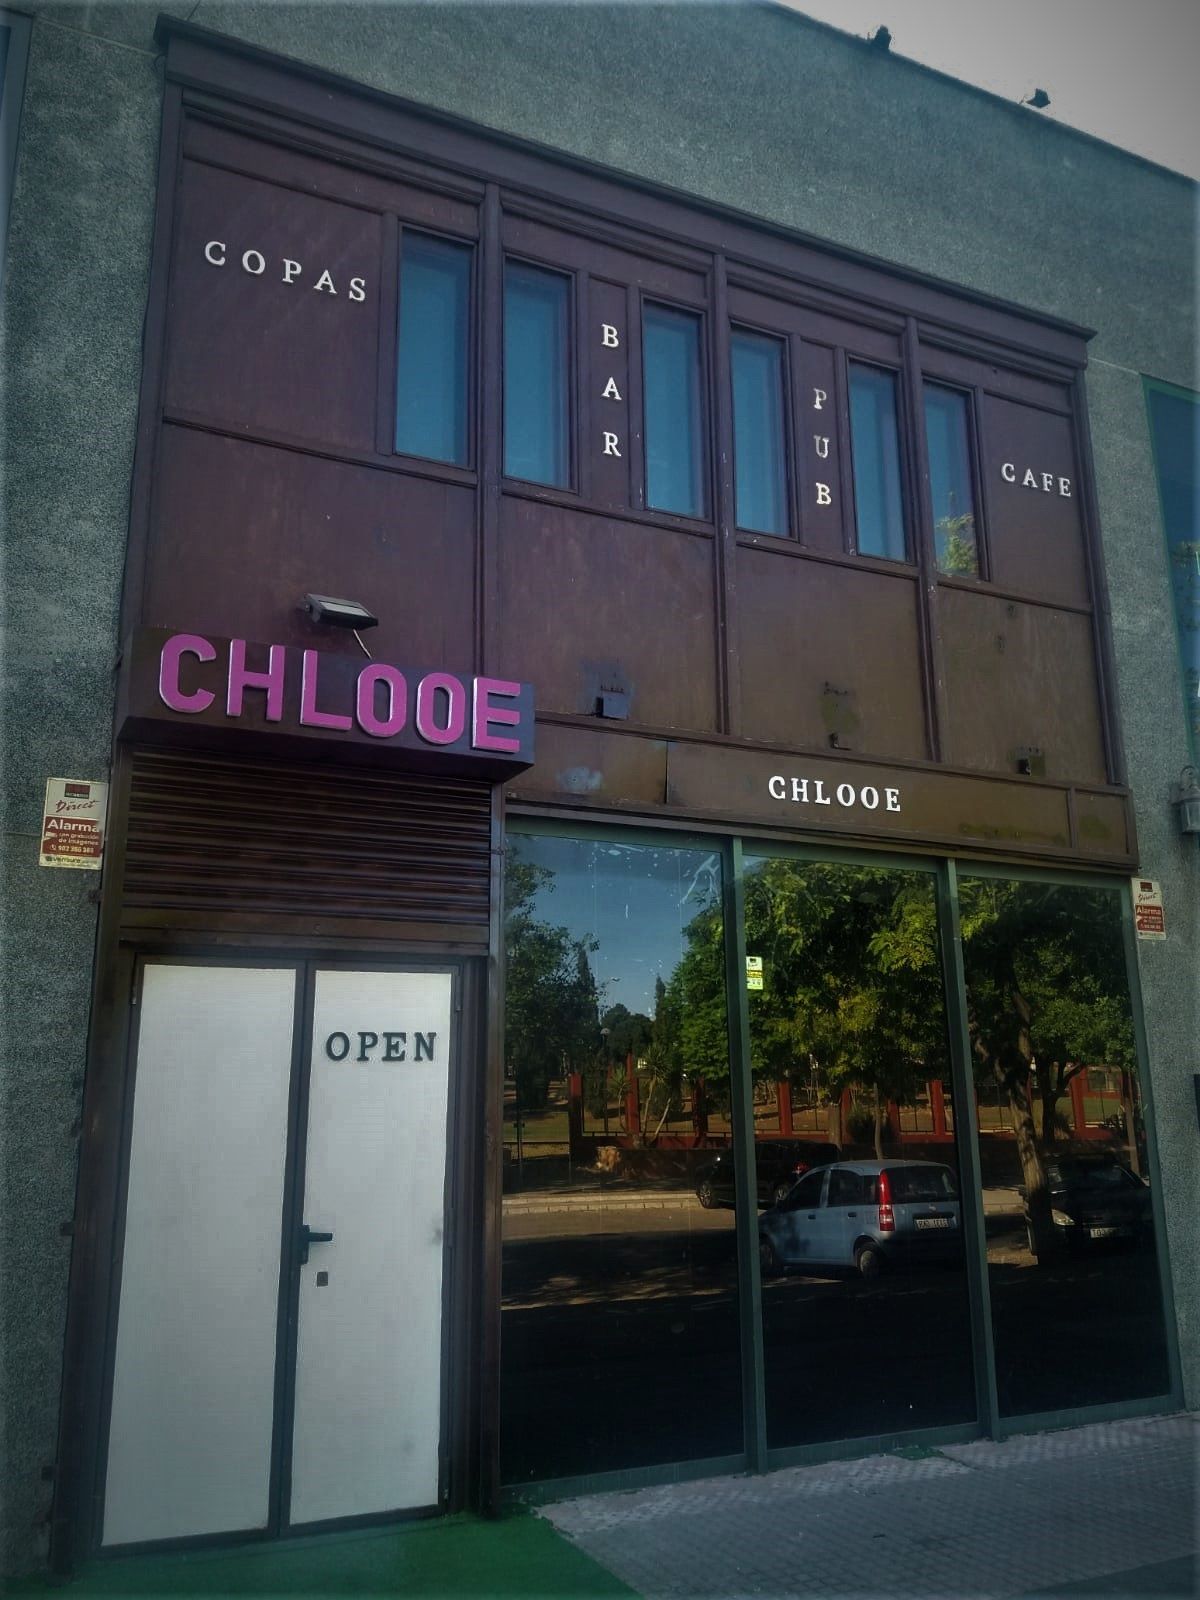 Chlooe Liberal -  Gentlemens Club Brothel Strip Club